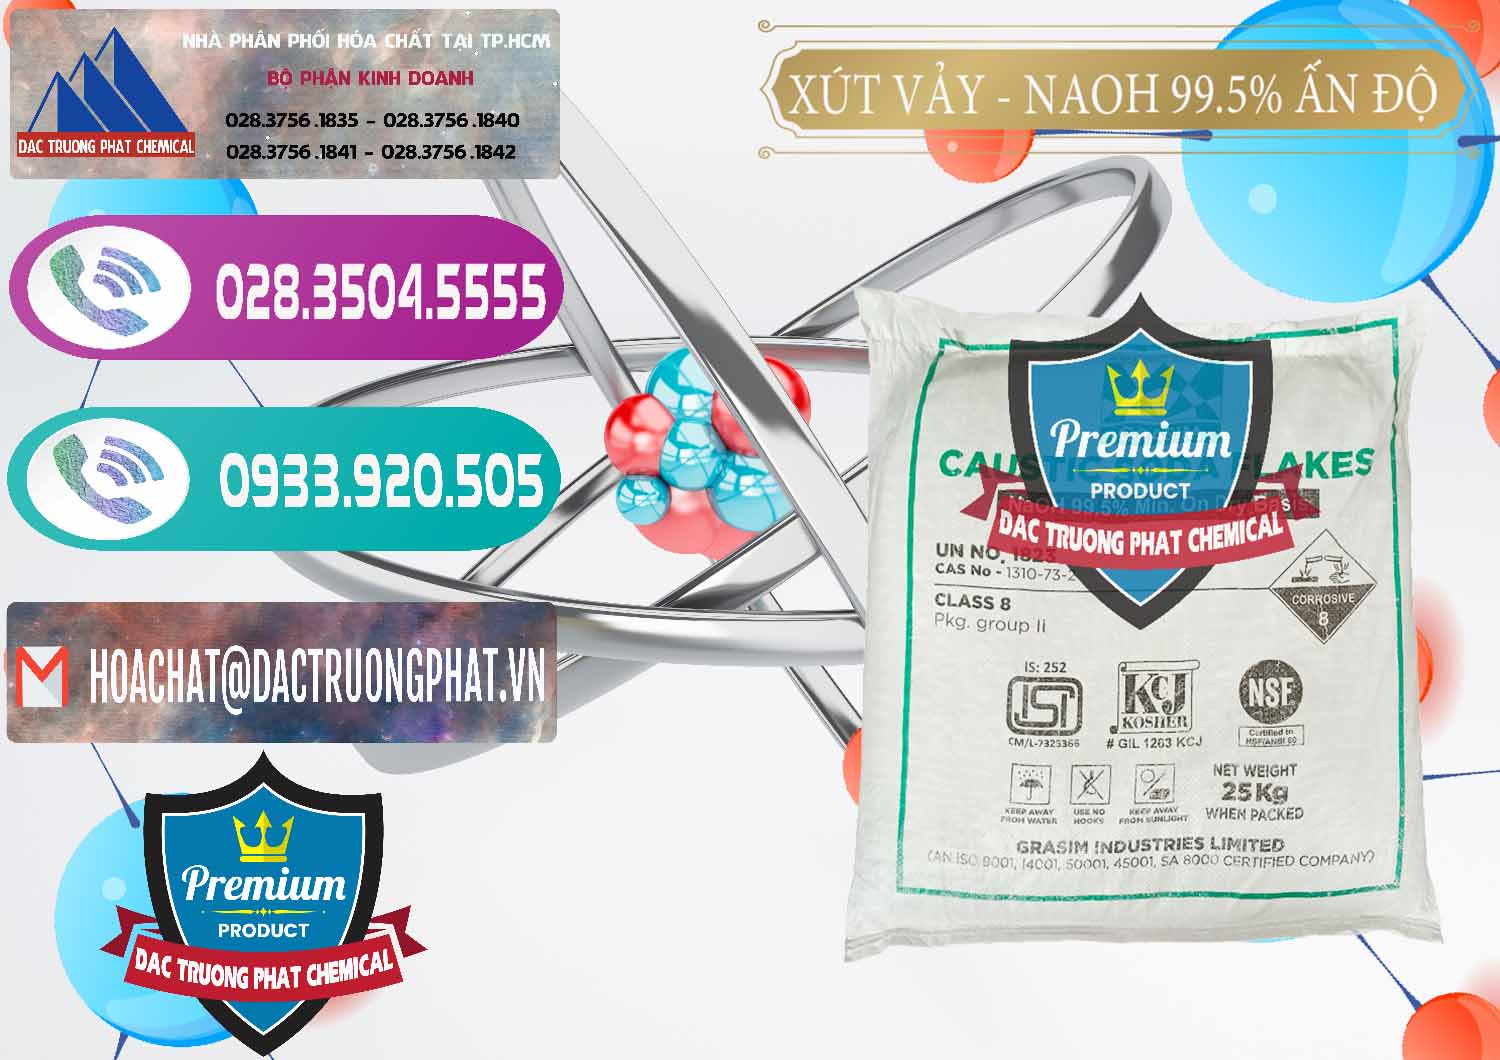 Công ty chuyên bán & cung cấp Xút Vảy - NaOH Vảy 99.5% Aditya Birla Grasim Ấn Độ India - 0170 - Công ty cung cấp và phân phối hóa chất tại TP.HCM - hoachatxulynuoc.com